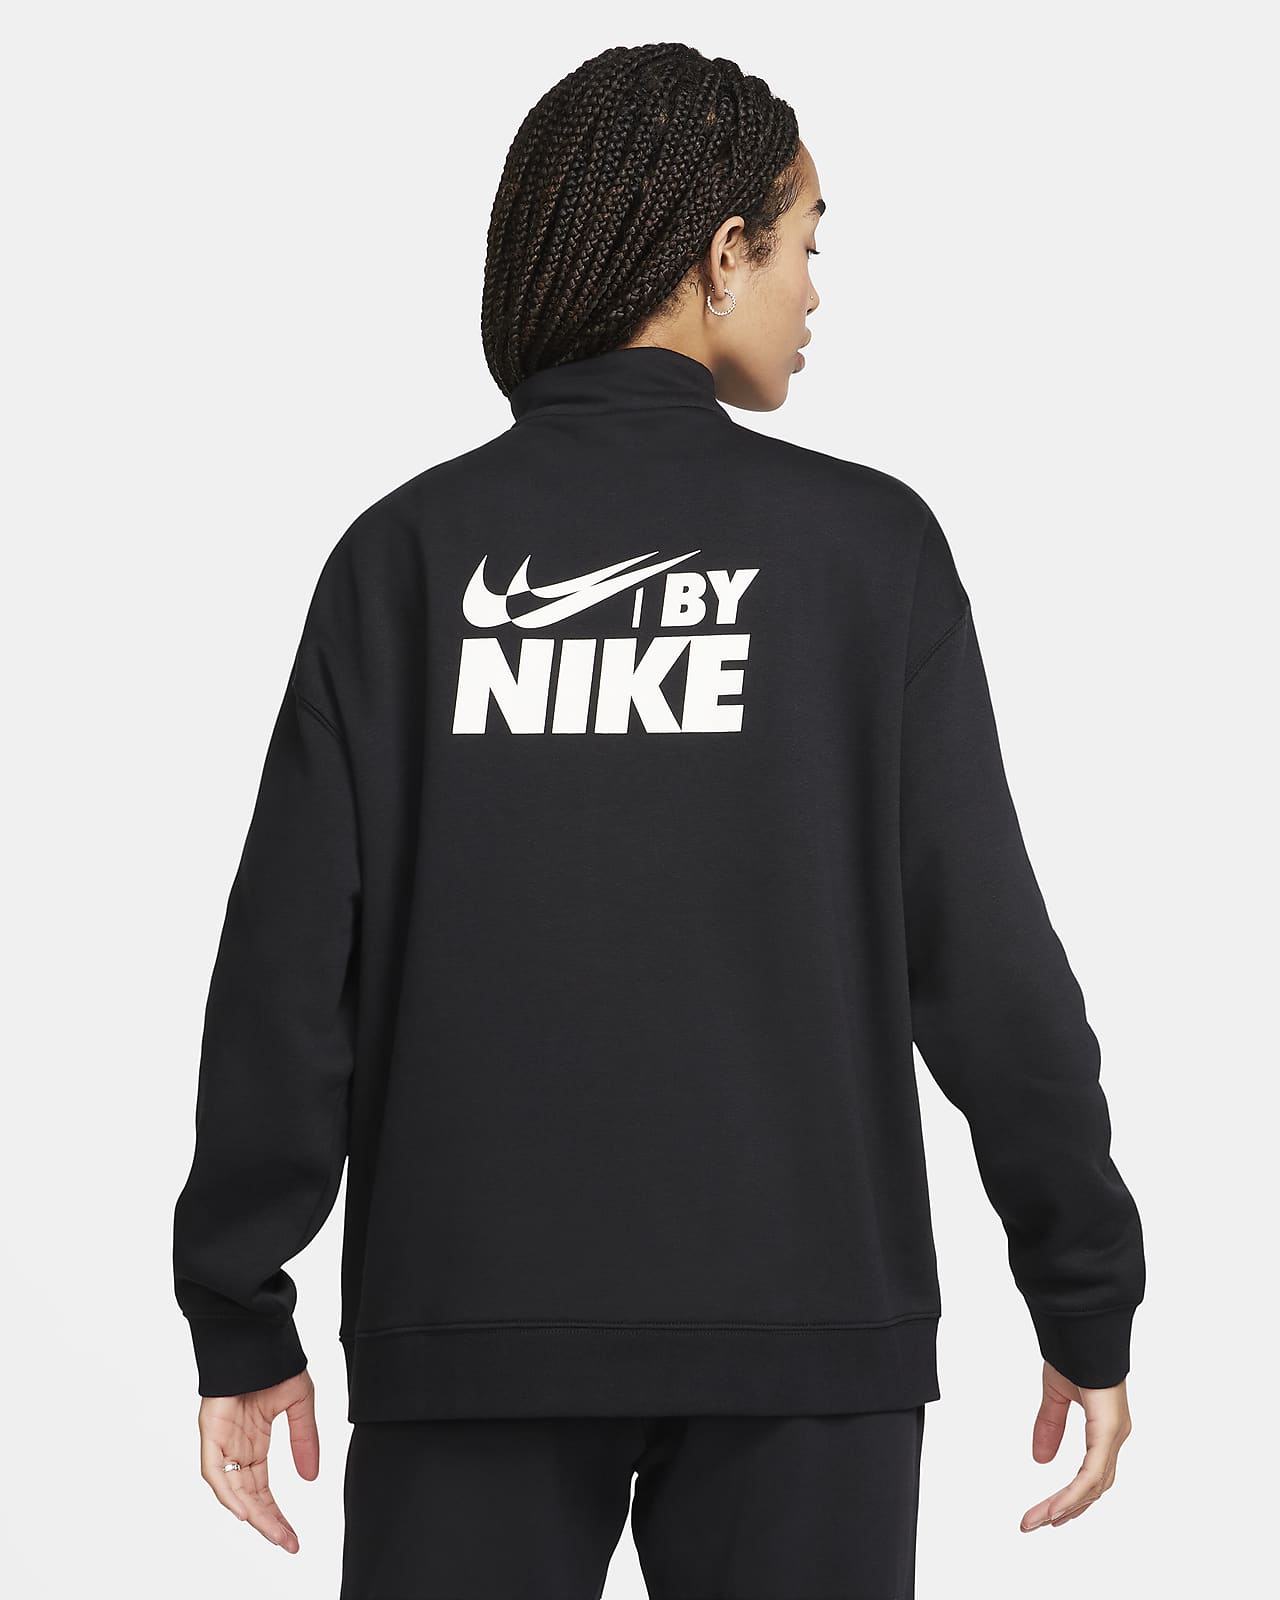 Nike Sportswear Women's Oversized 1/4-Zip Fleece Top. Nike HR